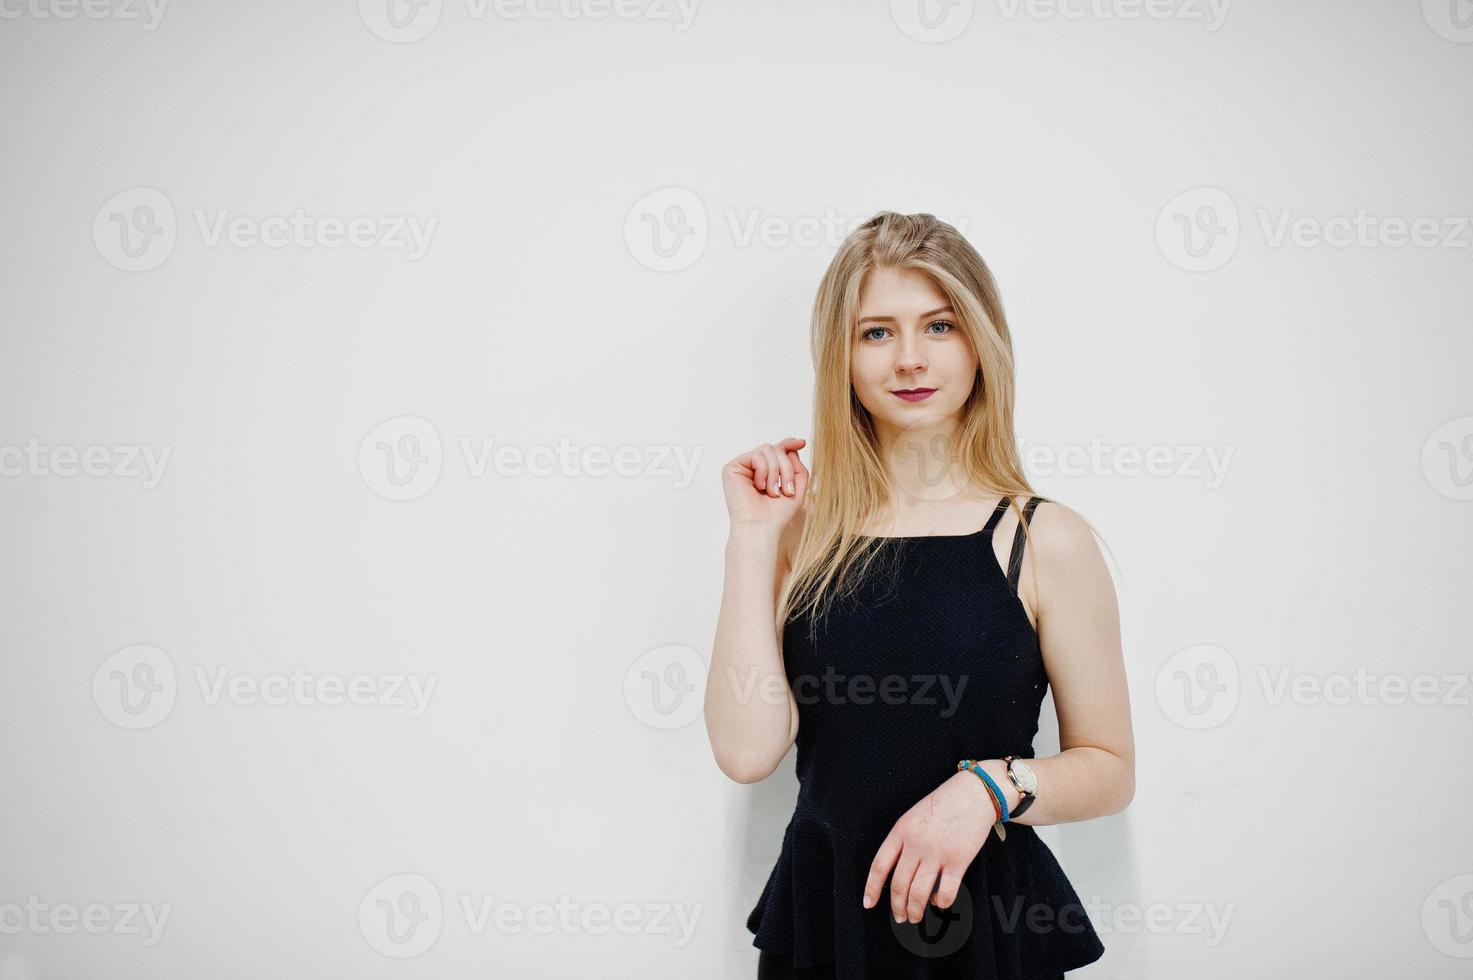 portret van blond meisje in zwarte slijtage tegen een witte achtergrond. foto